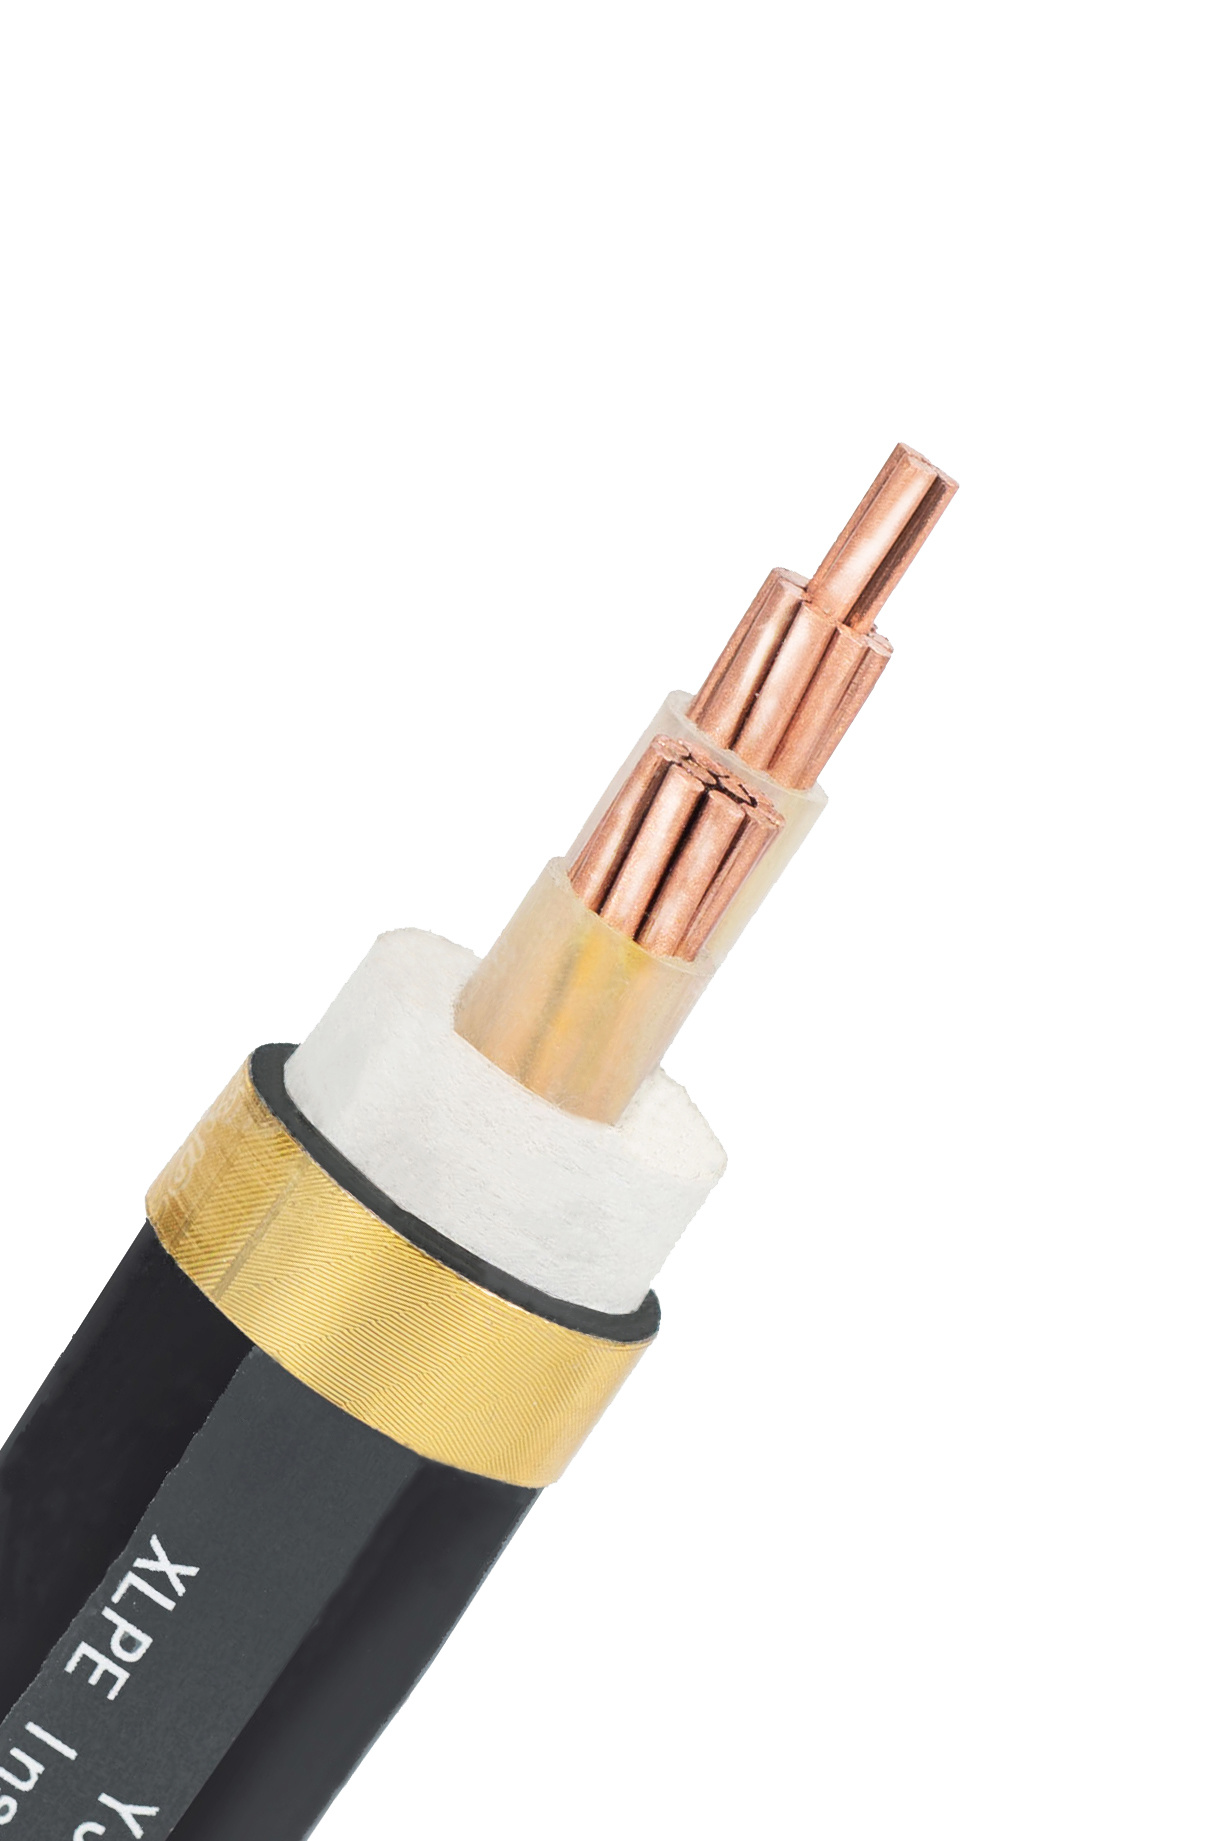 
                Kvvp22 cablear varios cables de mando, cable eléctrico y Kvv Cable de 4mm2 recubierto de PVC 450/750V Blindados de la transmisión de señal
            